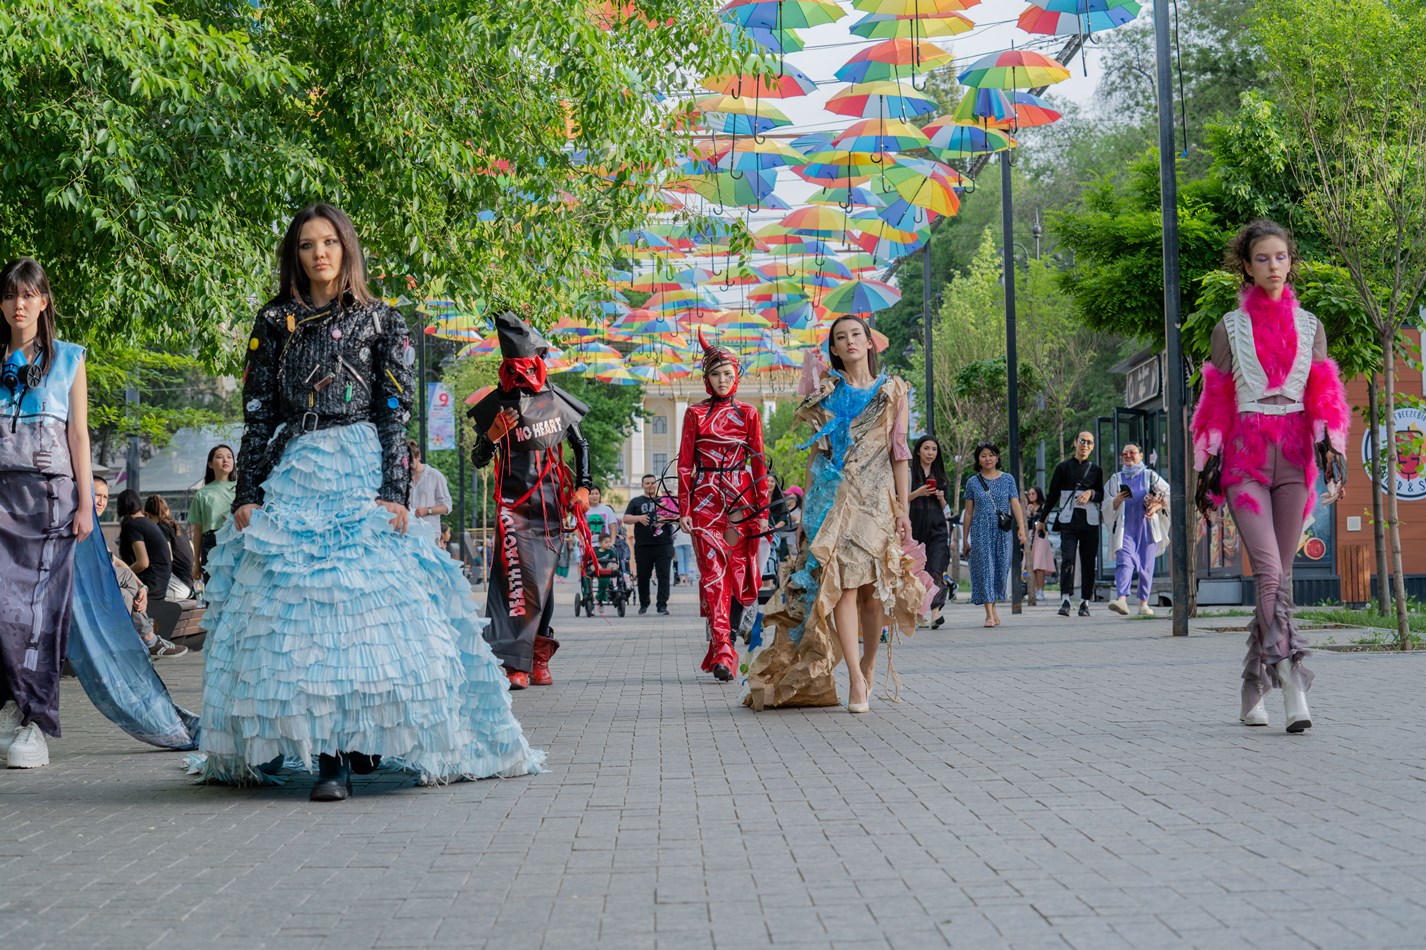 Что это было? Алматинцы обсуждают странное дефиле на улице Панфилова